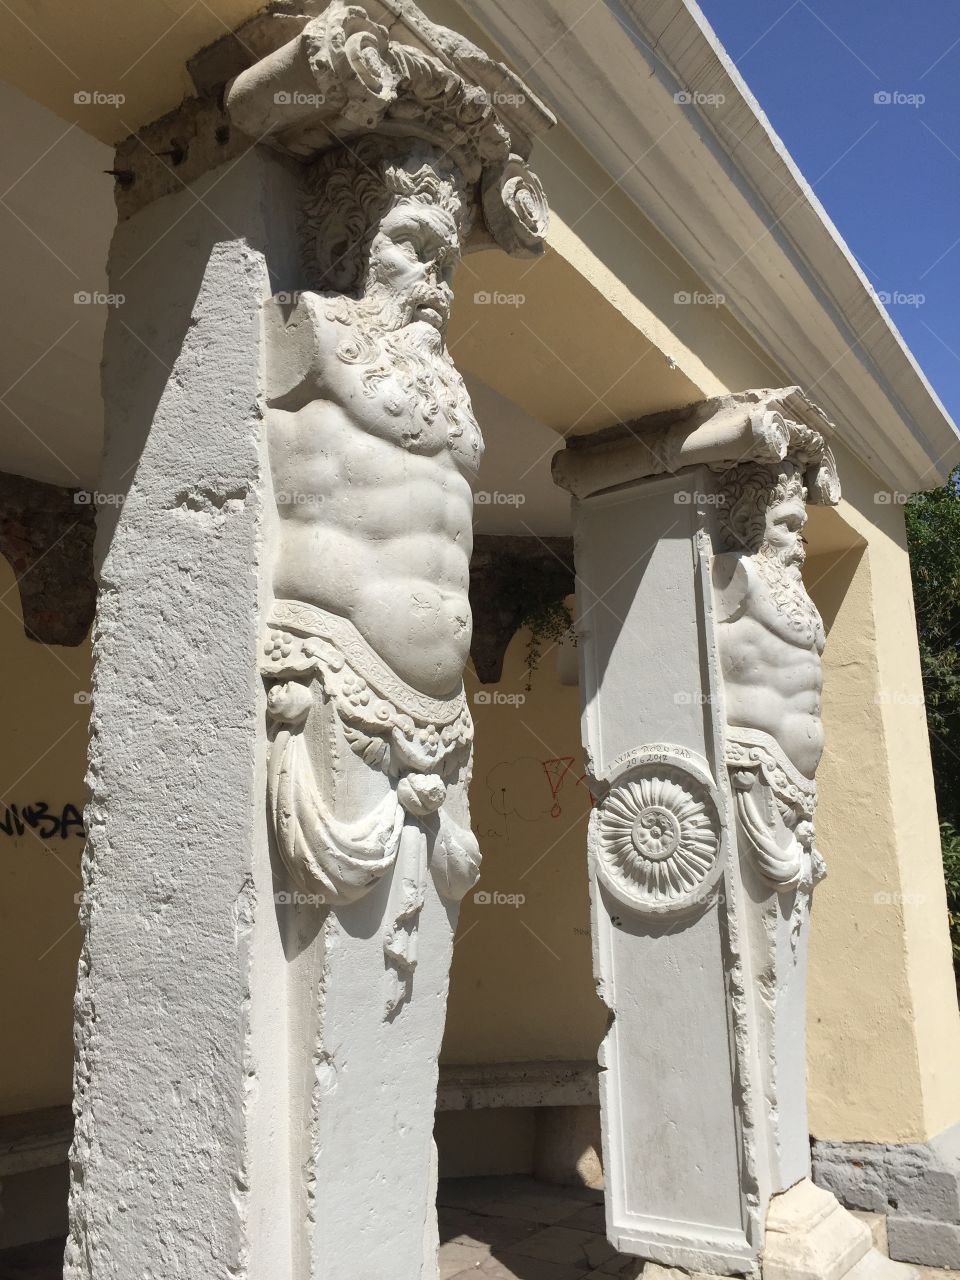 Sculptures in Queen Jelena garden in Zadar 